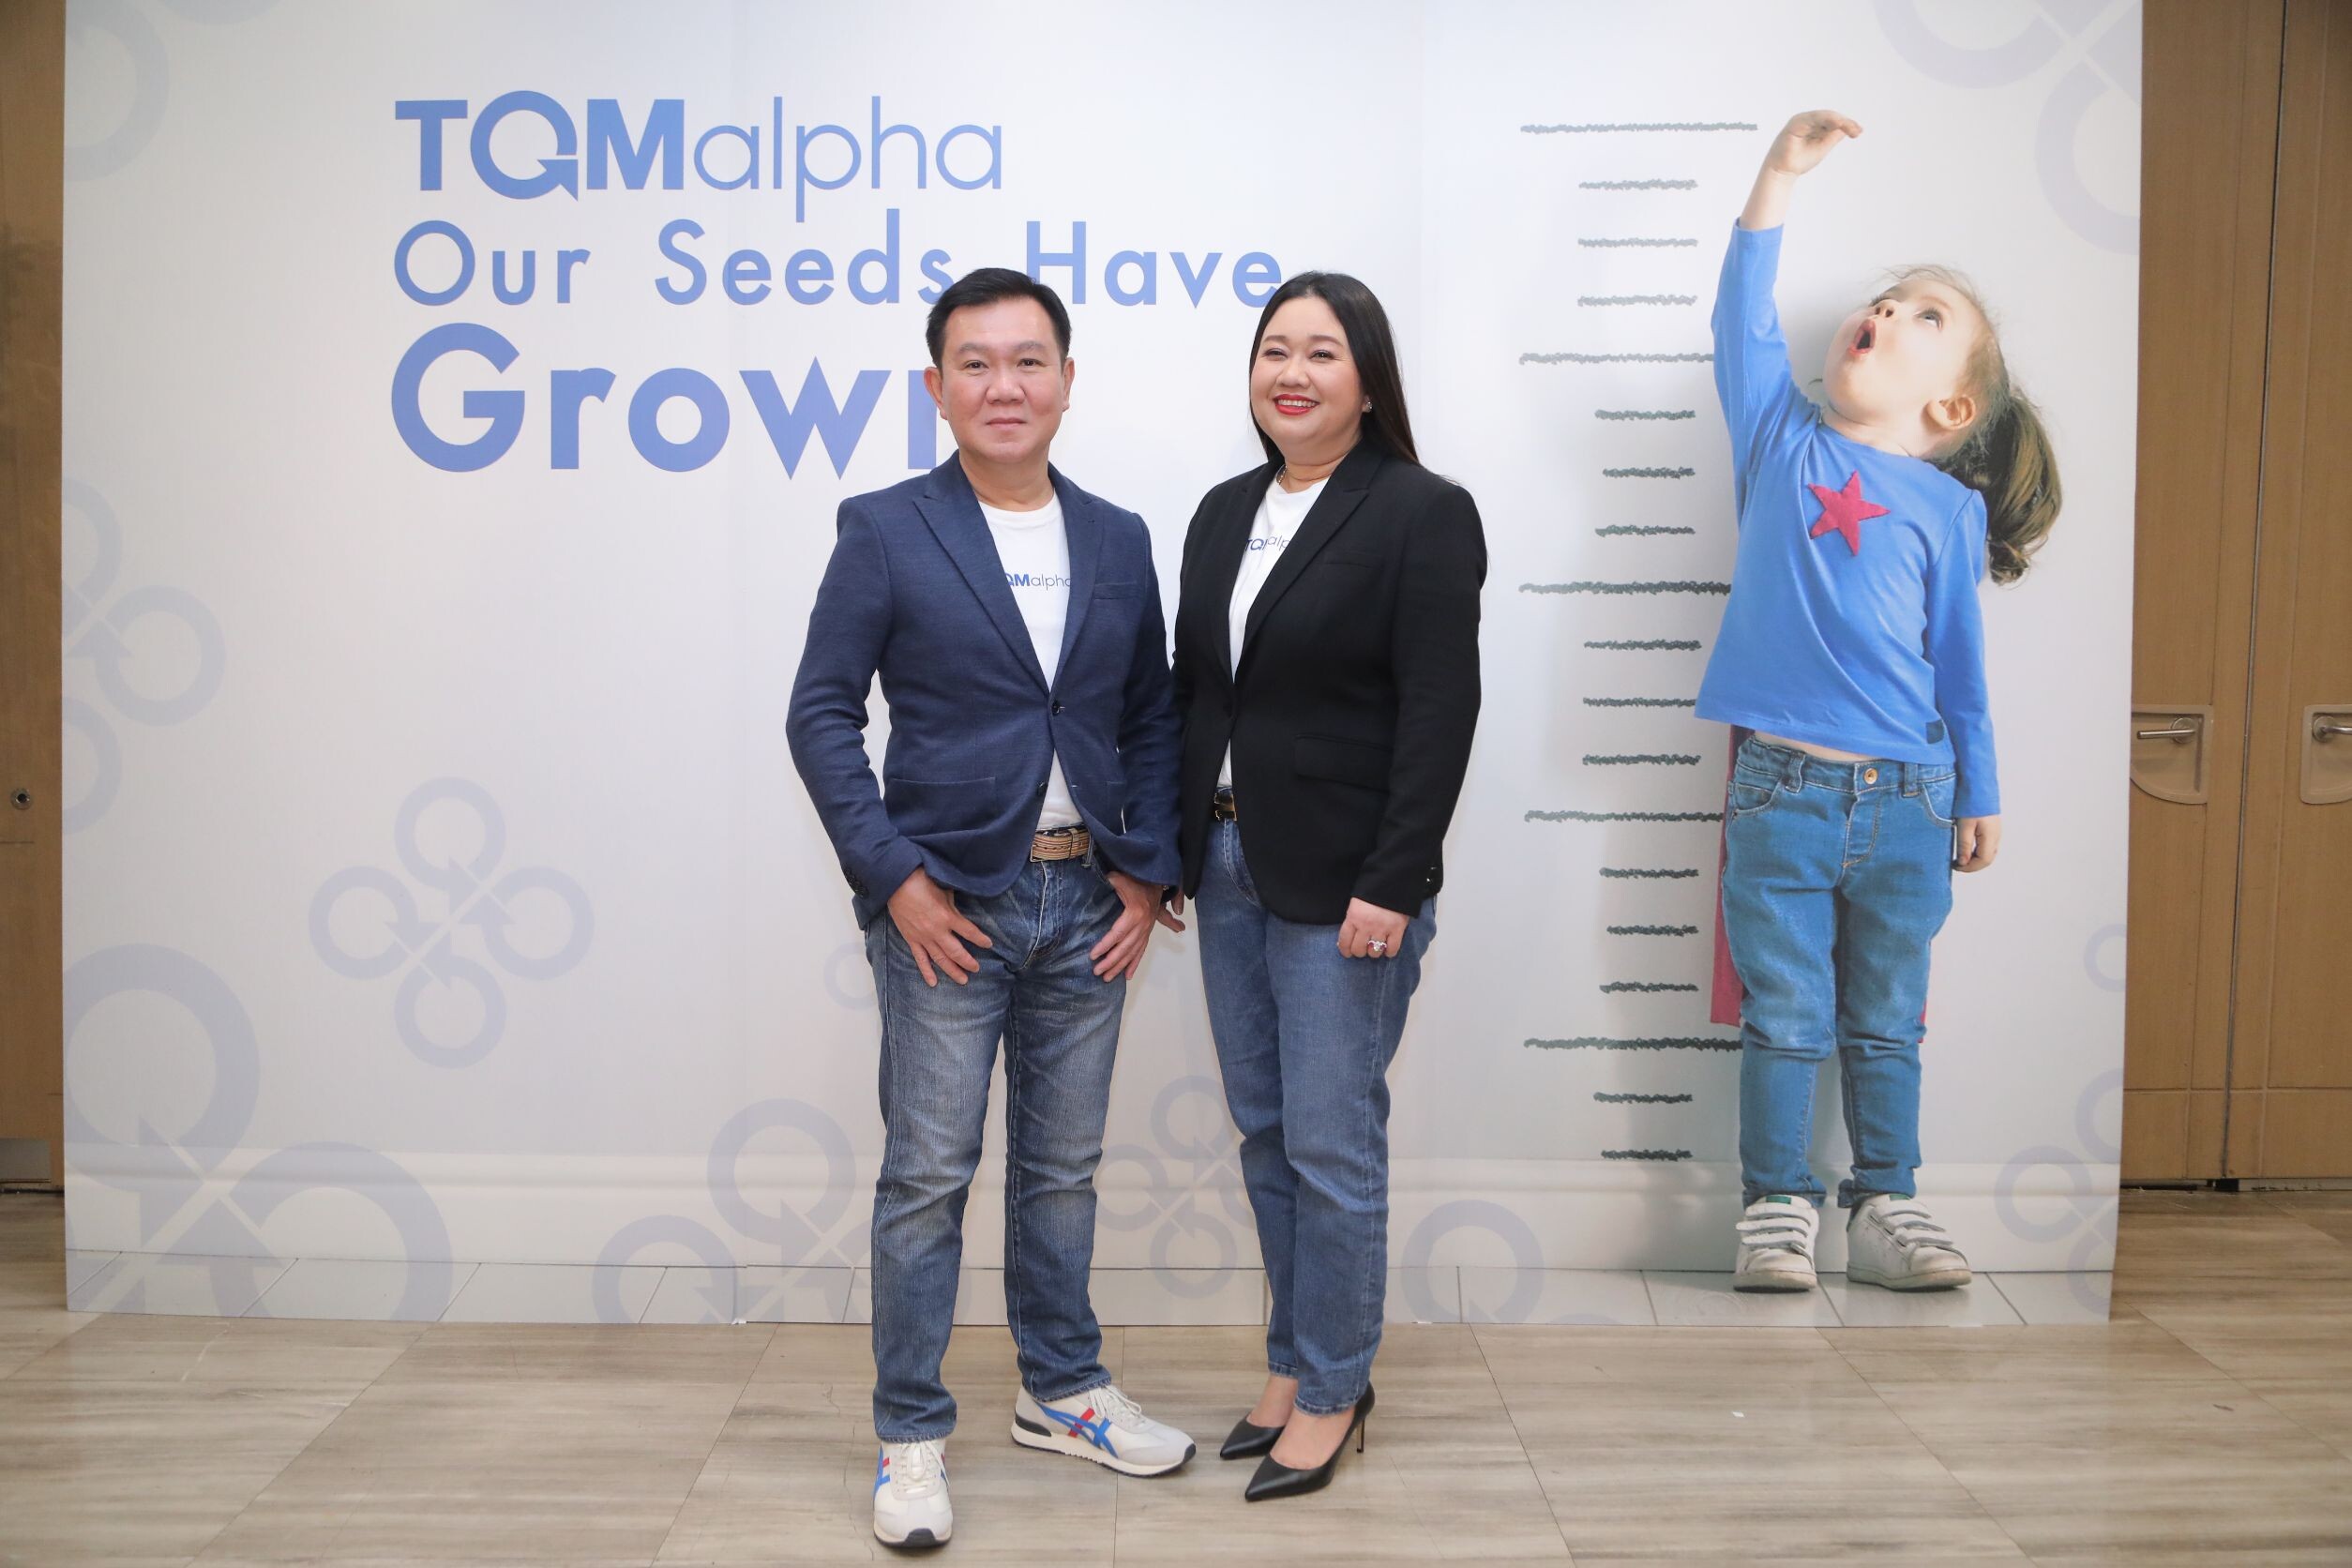 TQMalpha เปิดแผนปี 2566 "7 Growth Strategy" ย้ำ 3 กลุ่มธุรกิจประกัน การเงิน และเทคโนโลยีแพลตฟอร์ม โตต่อเนื่อง ปีหน้าพร้อมนำบริษัทลูก IPO 3 ปี 3 บริษัท